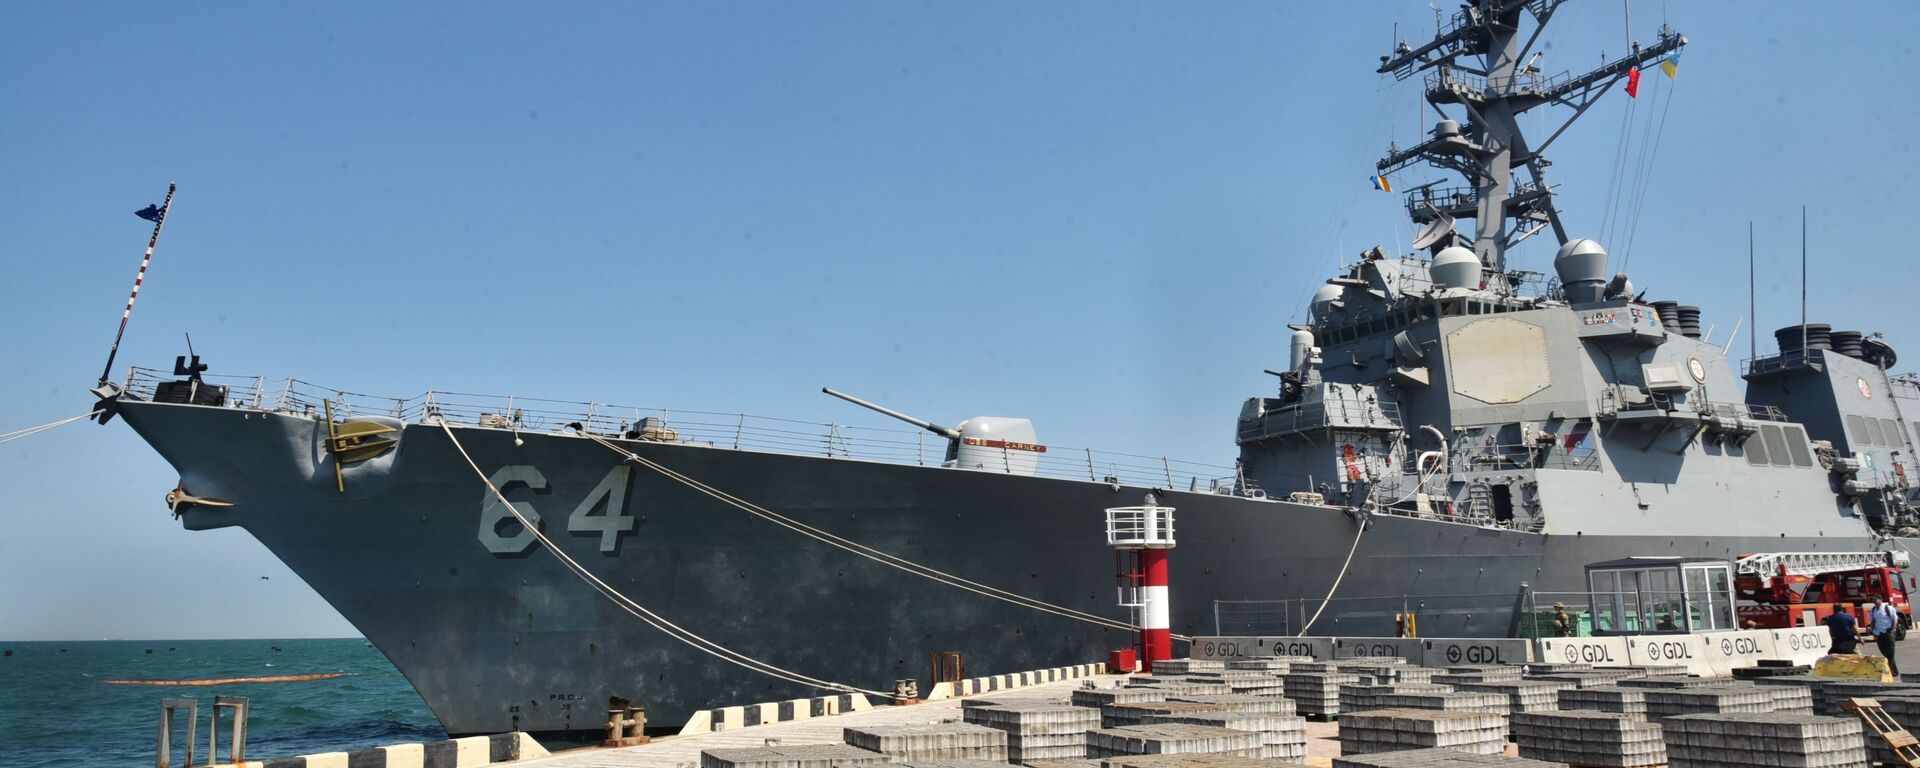 Эсминец ВМС США Carney в морском порту Одессы - Sputnik Latvija, 1920, 16.04.2021